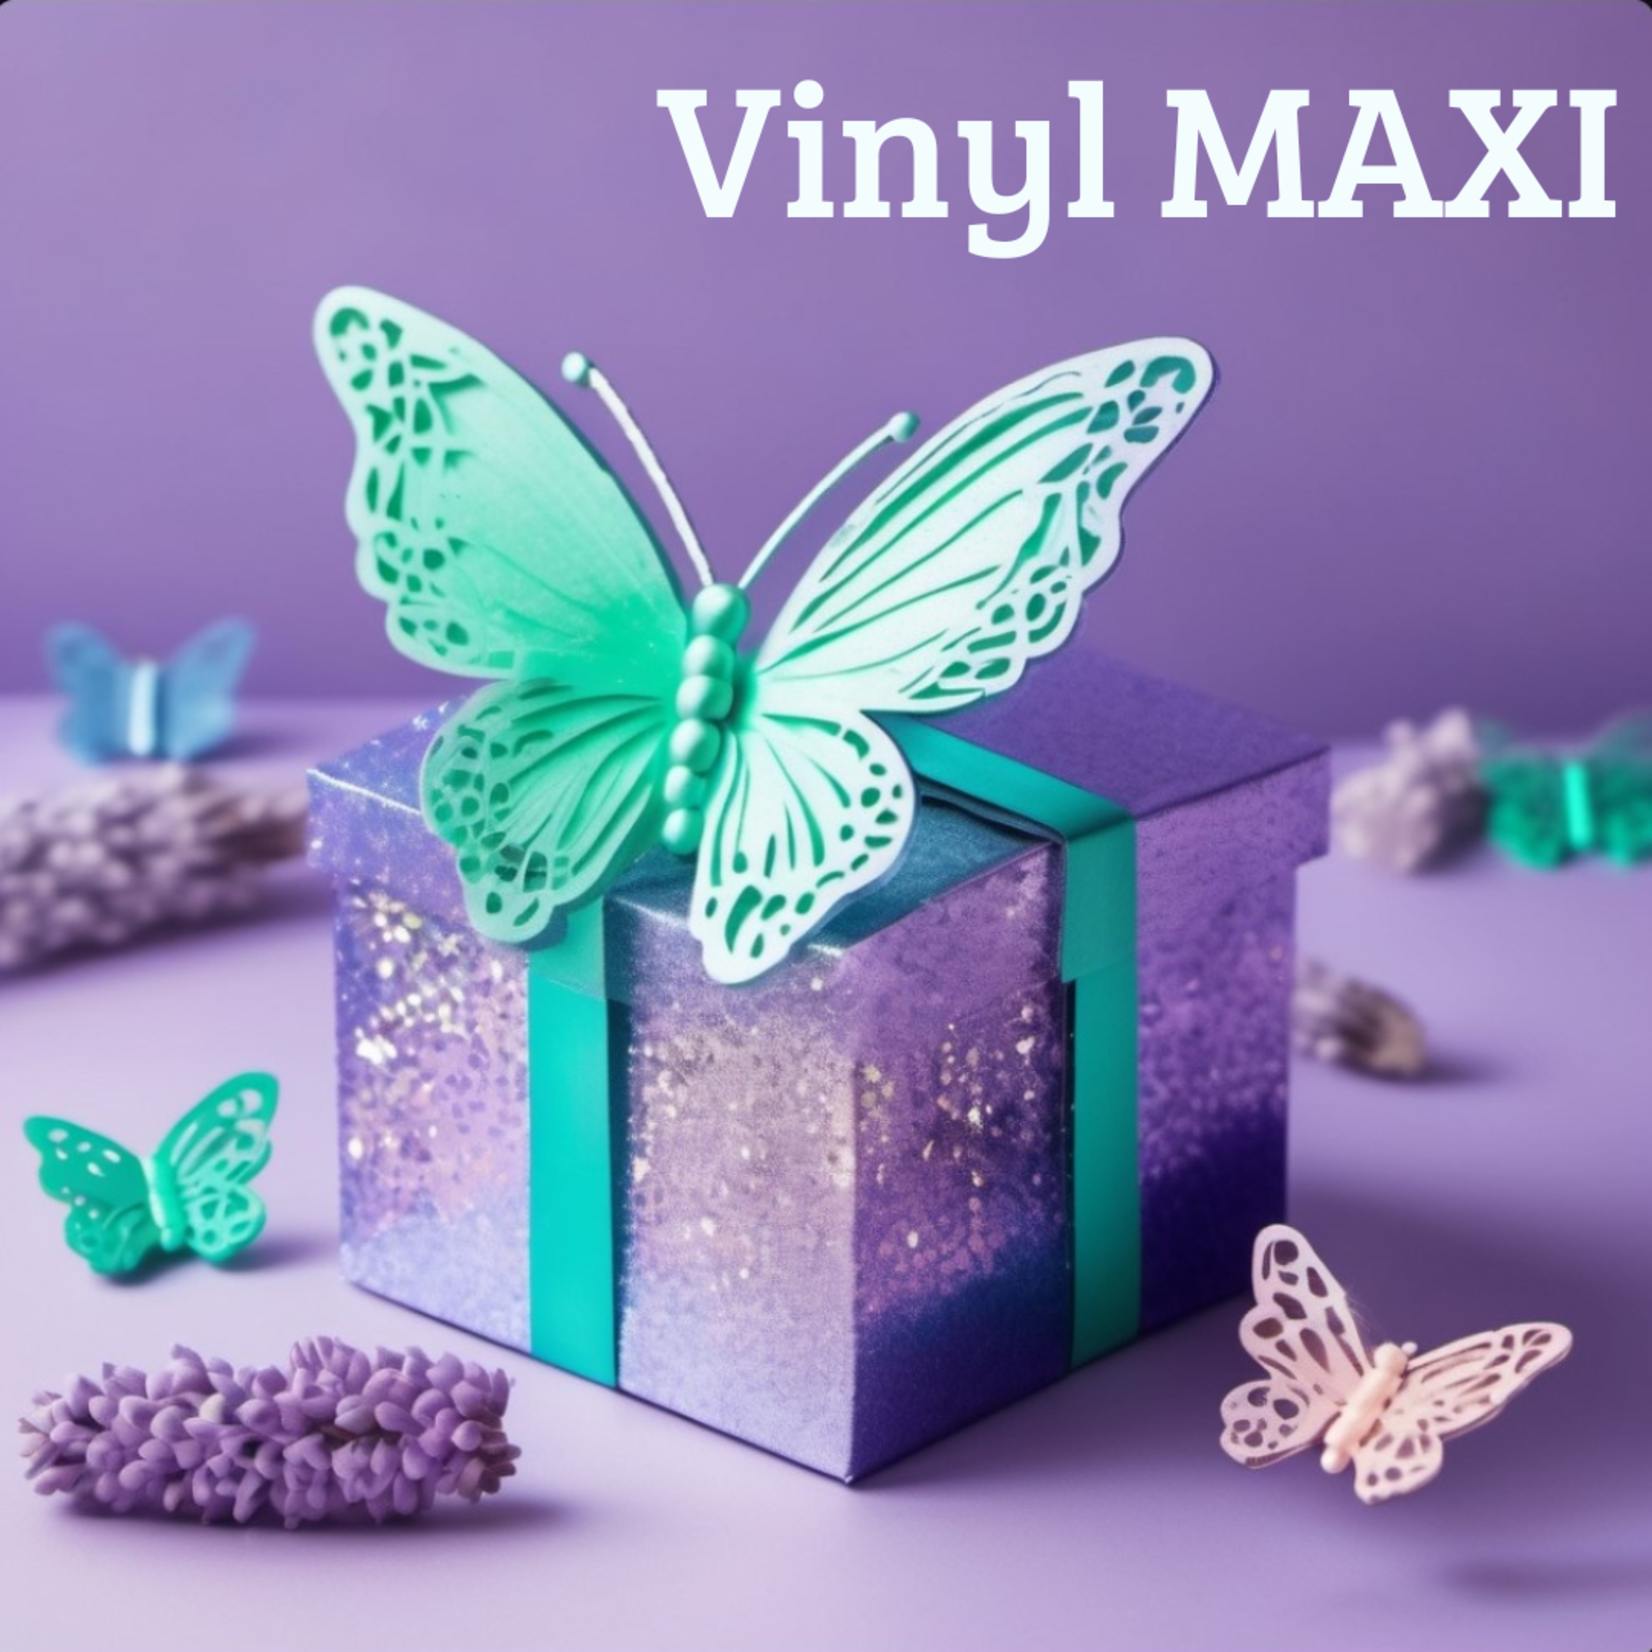 Mystery box vinyl (MAXI)